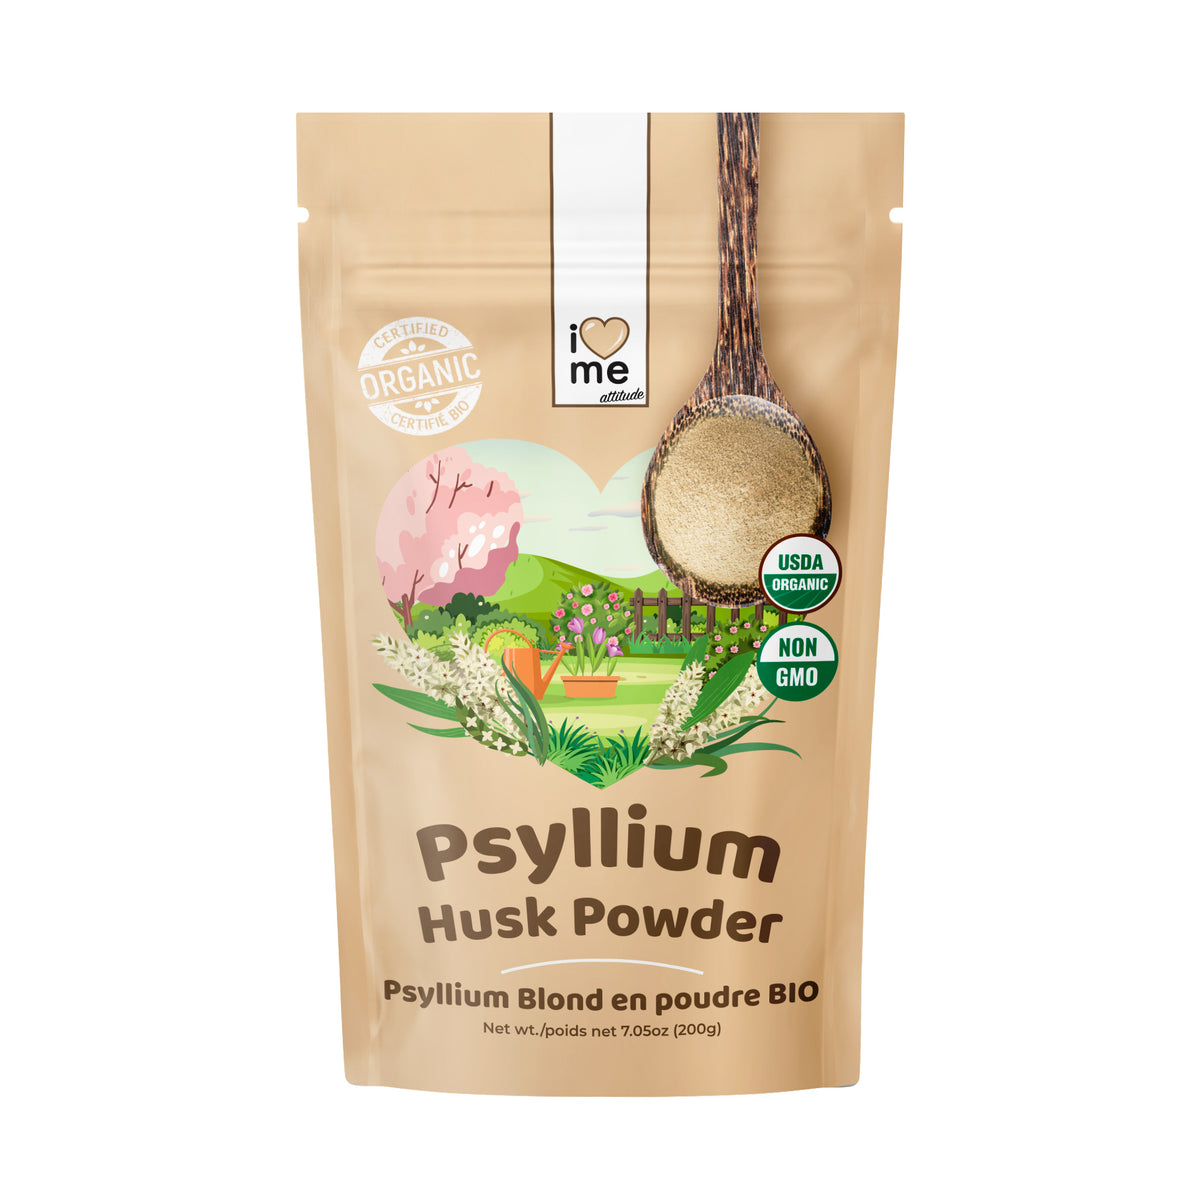 Psyllium Husks - Certified Organic